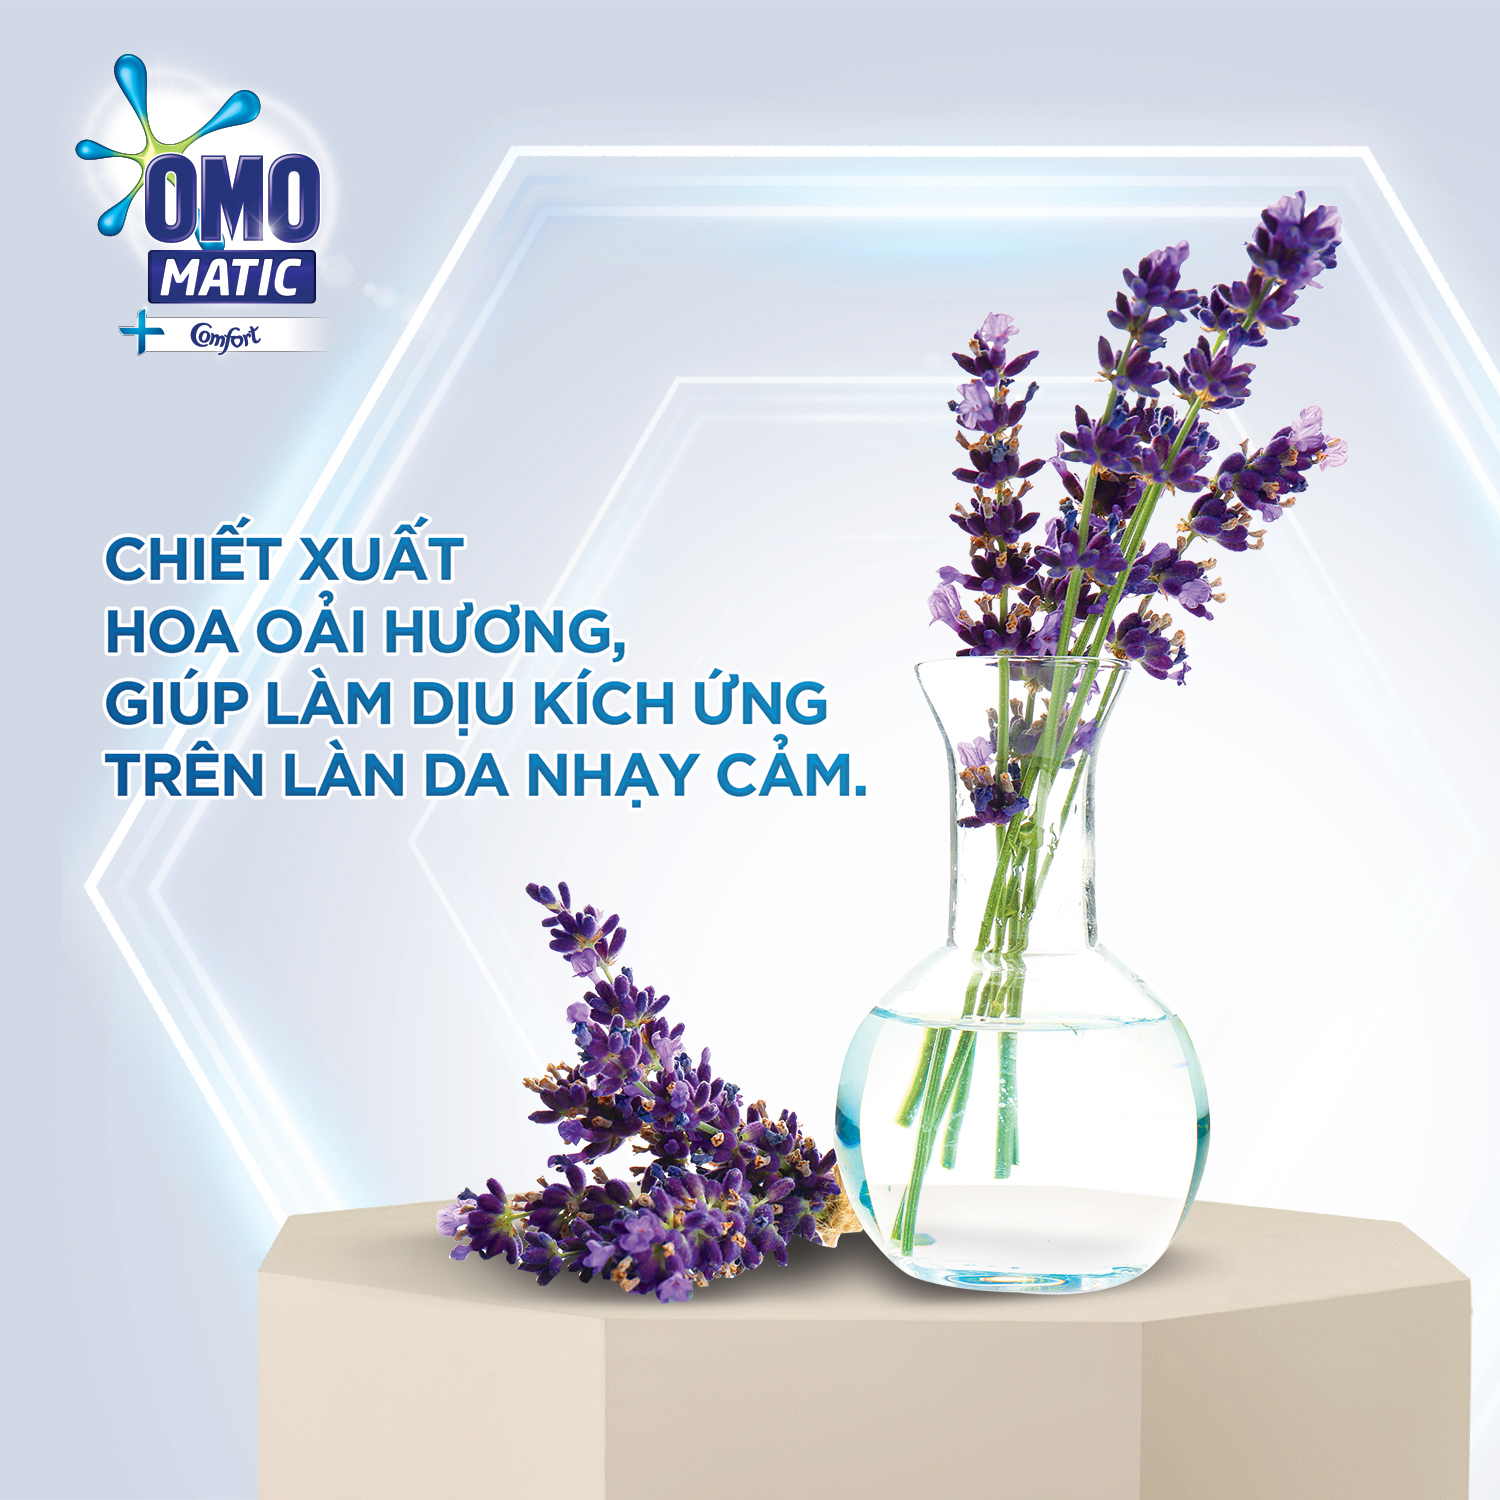 Combo 2 Túi Nước giặt OMO Matic chuyên dụng Cửa Trước Lavender Khử Mùi Thư Thái 3.6kg